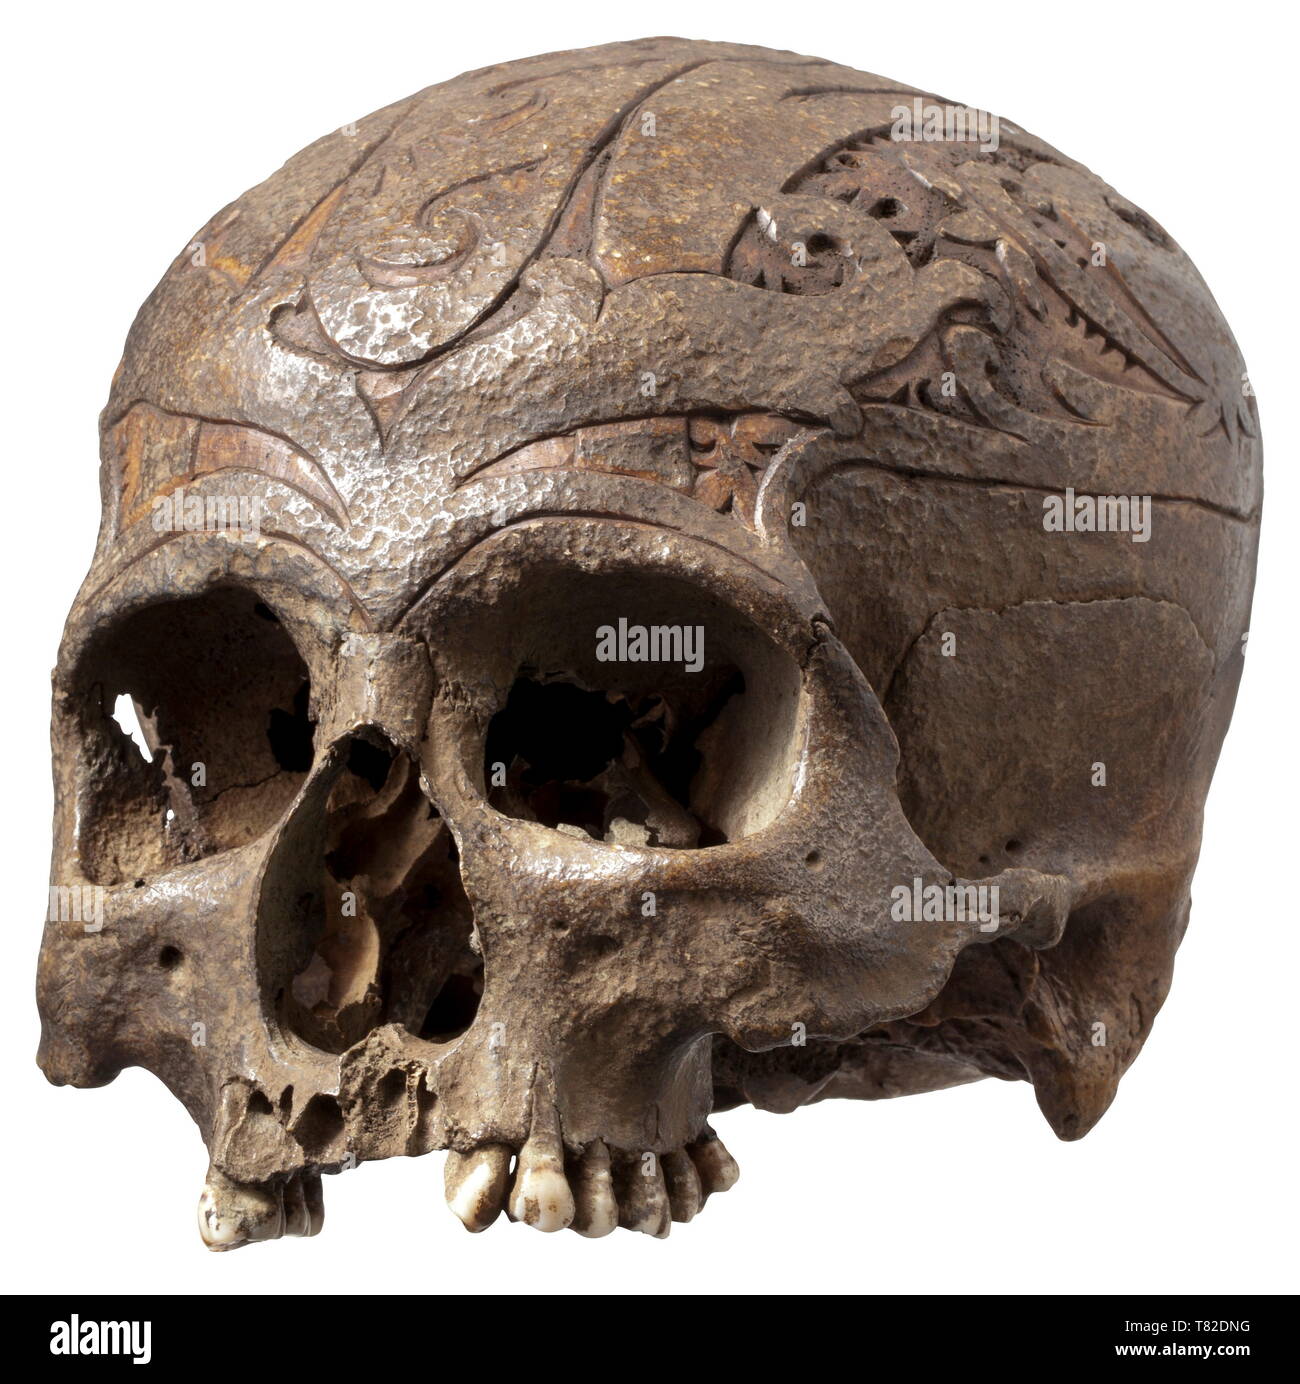 Un trofeo di cranio del popolo dayak, Borneo riccamente decorate cranio intero zucchetto profusamente scolpiti con rilievi ornamentali. Il cranio con il marrone scuro, parzialmente patina ruvida. Denti nella mascella superiore parzialmente conservato. Occhio alle prese e ossa temporali con distinte tracce di età. Altezza 15 cm. I DAYAK persone sono la popolazione indigena dell'isola del Borneo e comprendono diverse centinaia di gruppi etnici, alcuni dei quali variano considerevolmente in lingua, cultura e stile di vita. Il headhunting tradizione era praticata fino al XIX secolo quando, Additional-Rights-Clearance-Info-Not-Available Foto Stock